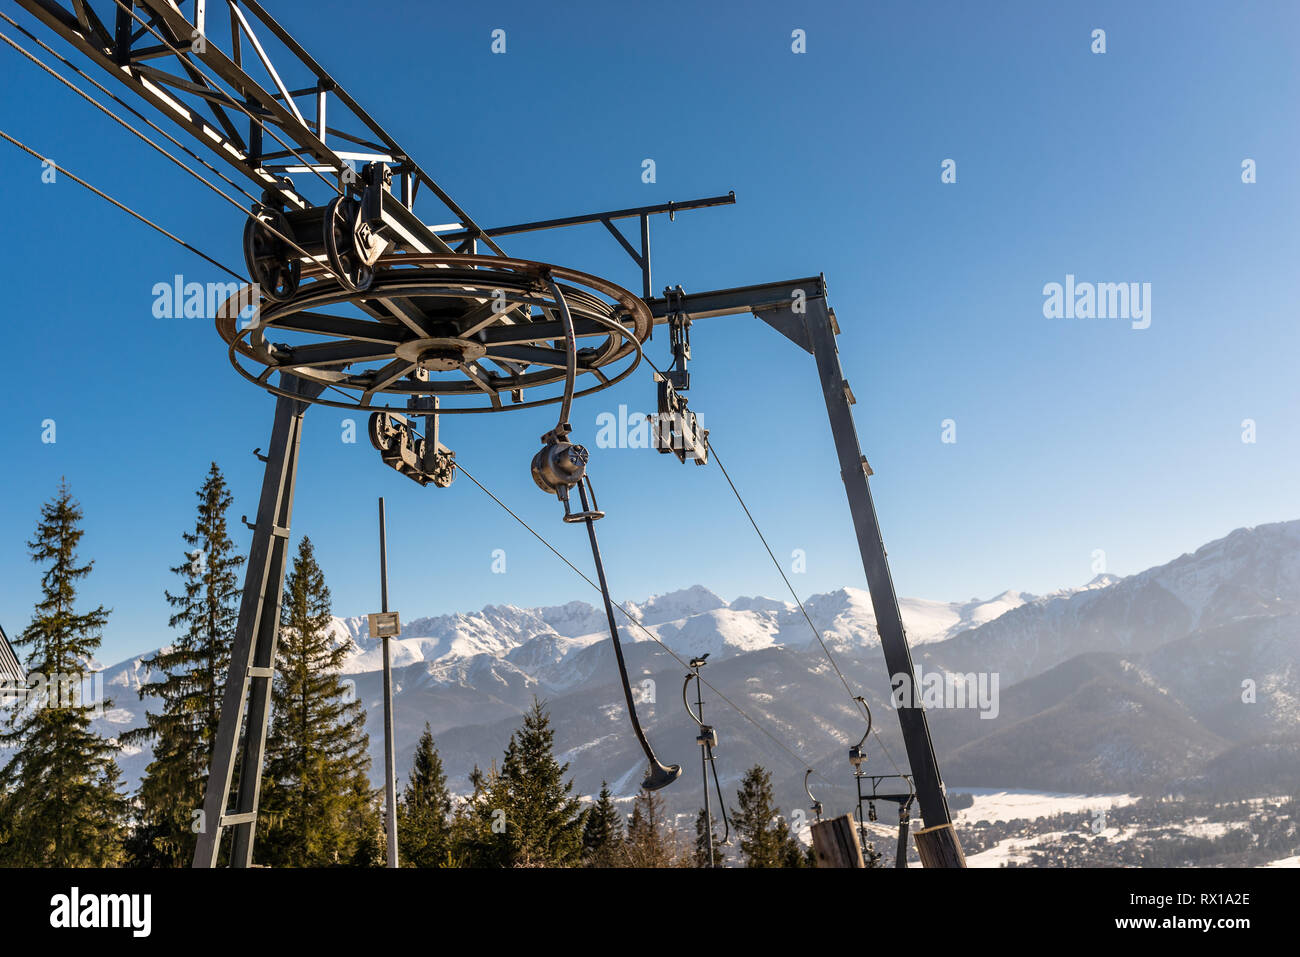 Der Mechanismus der Skilift, sichtbar groß, Antriebsrad Ziehen am Seil und hängenden Stühle im Hintergrund Berge und Bäume. Stockfoto